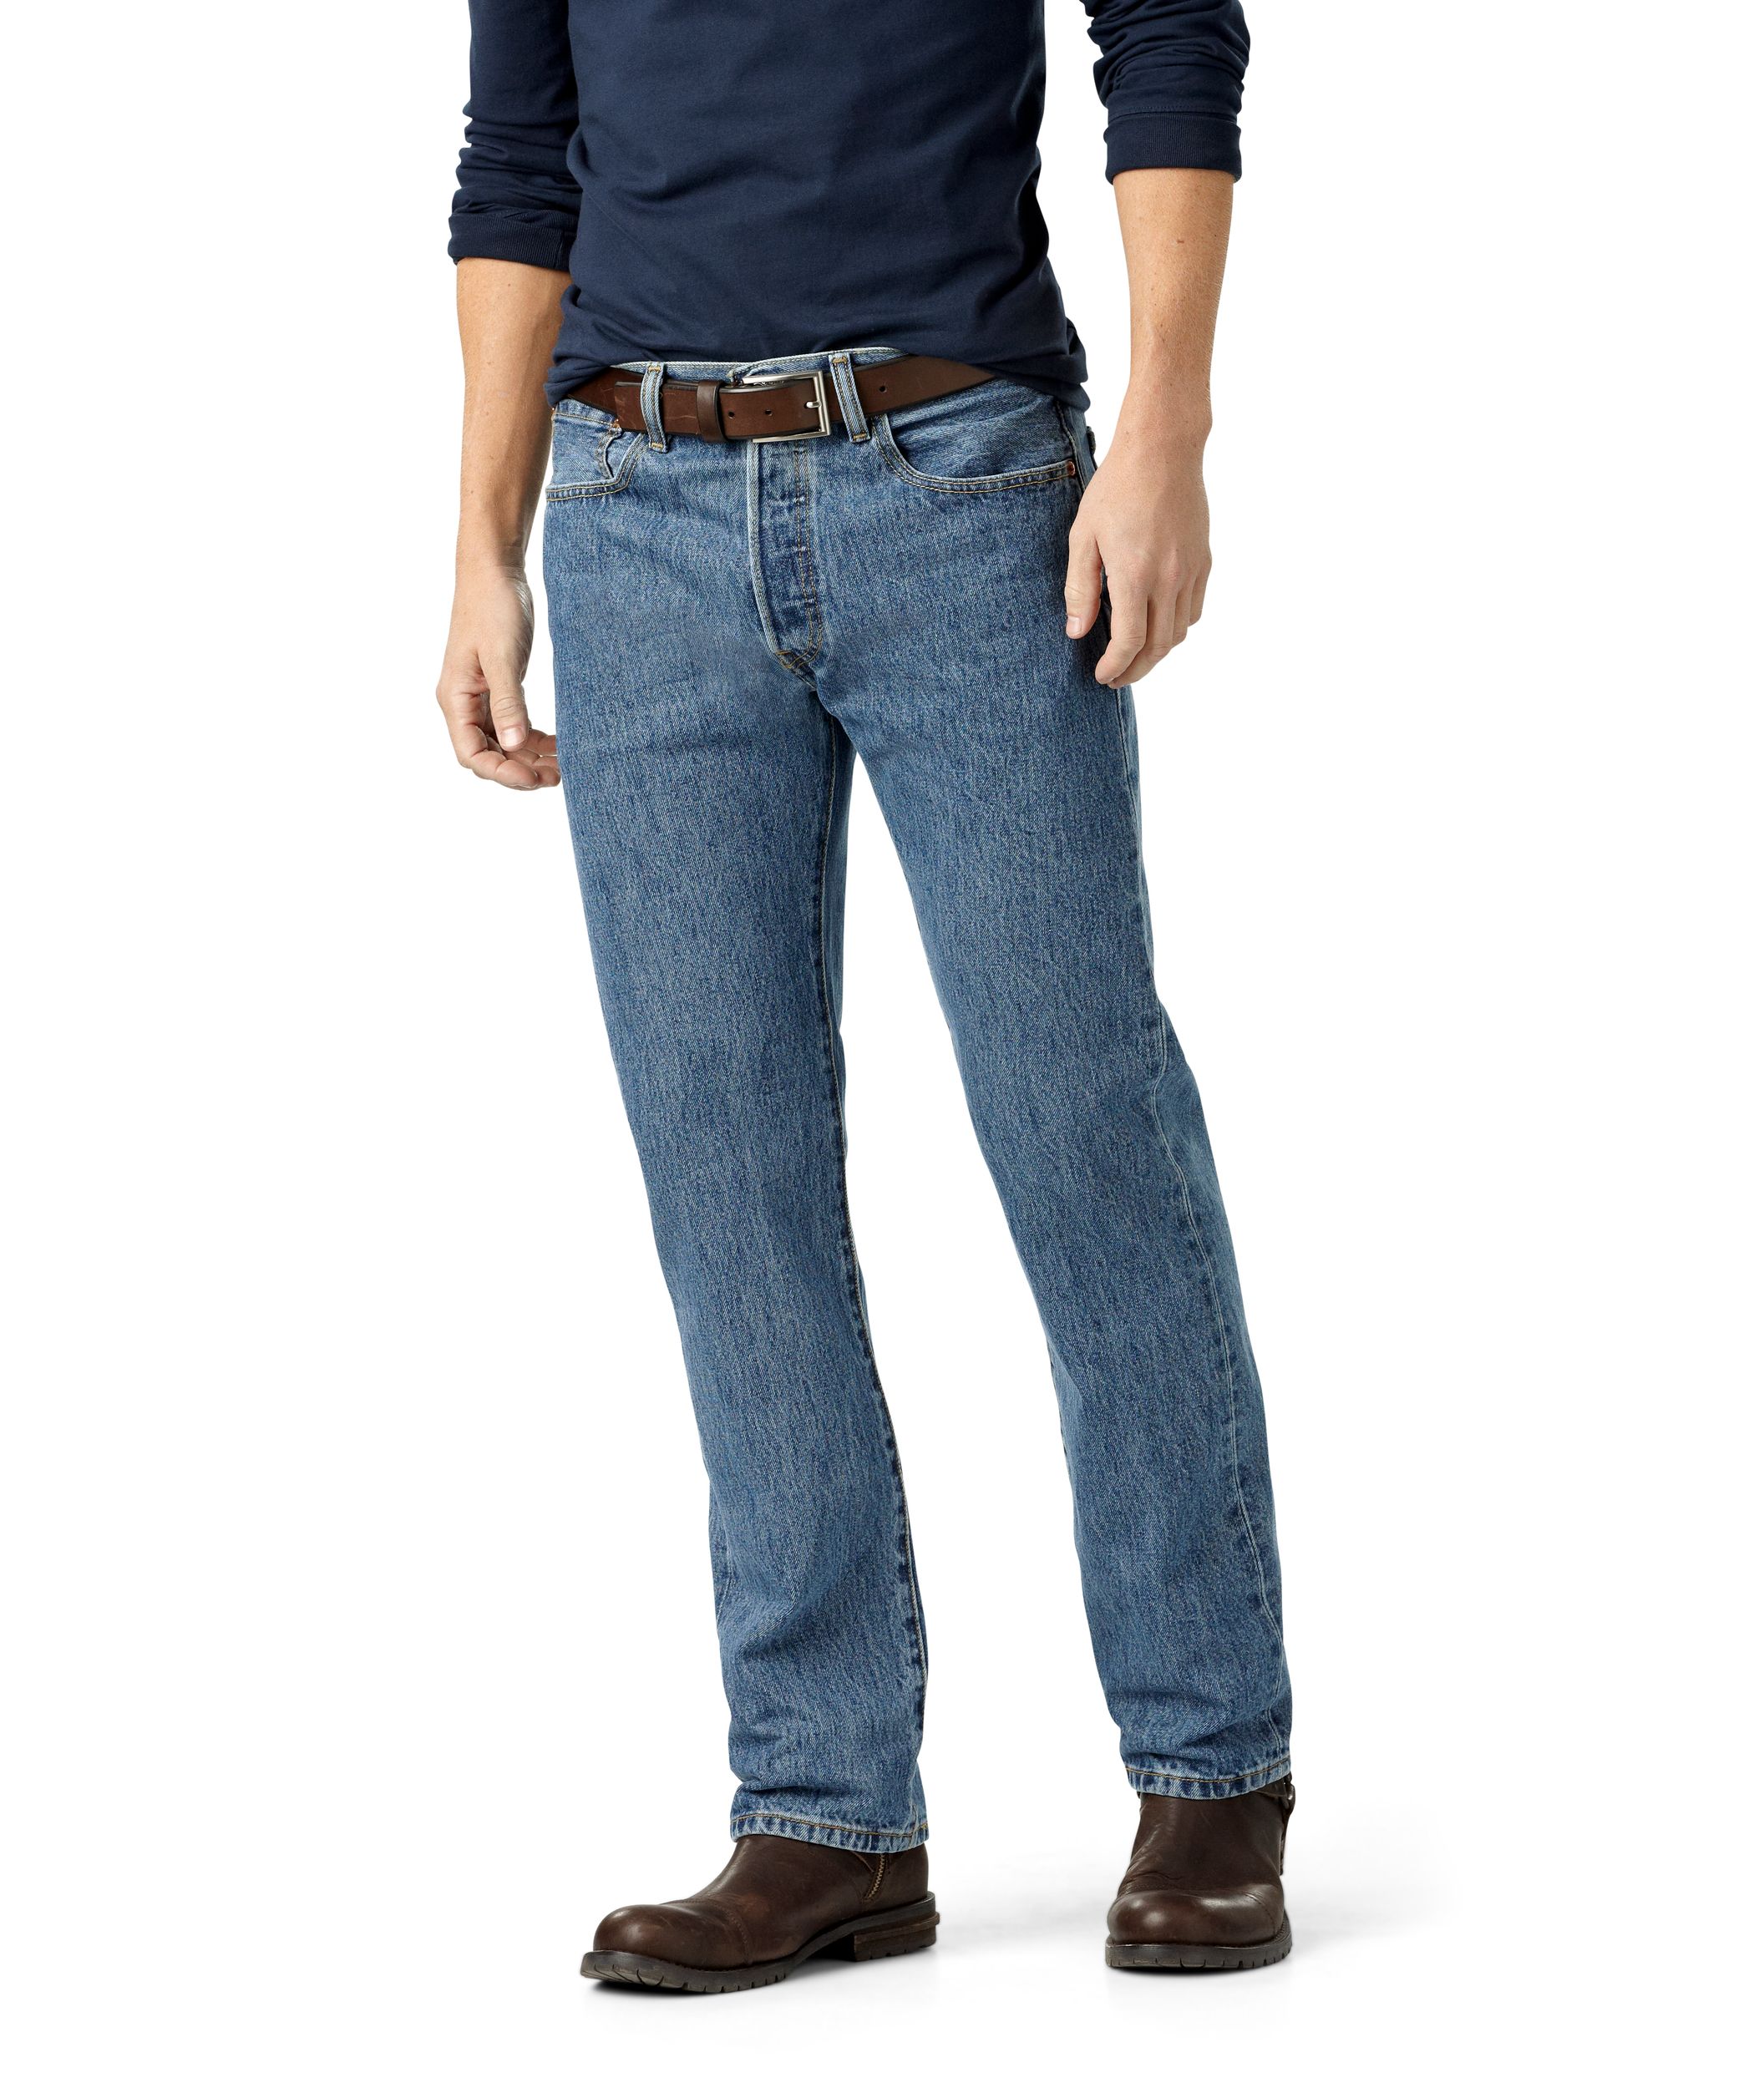 Levi's Men's 501 Original Fit Stone Washed Jeans - Denim